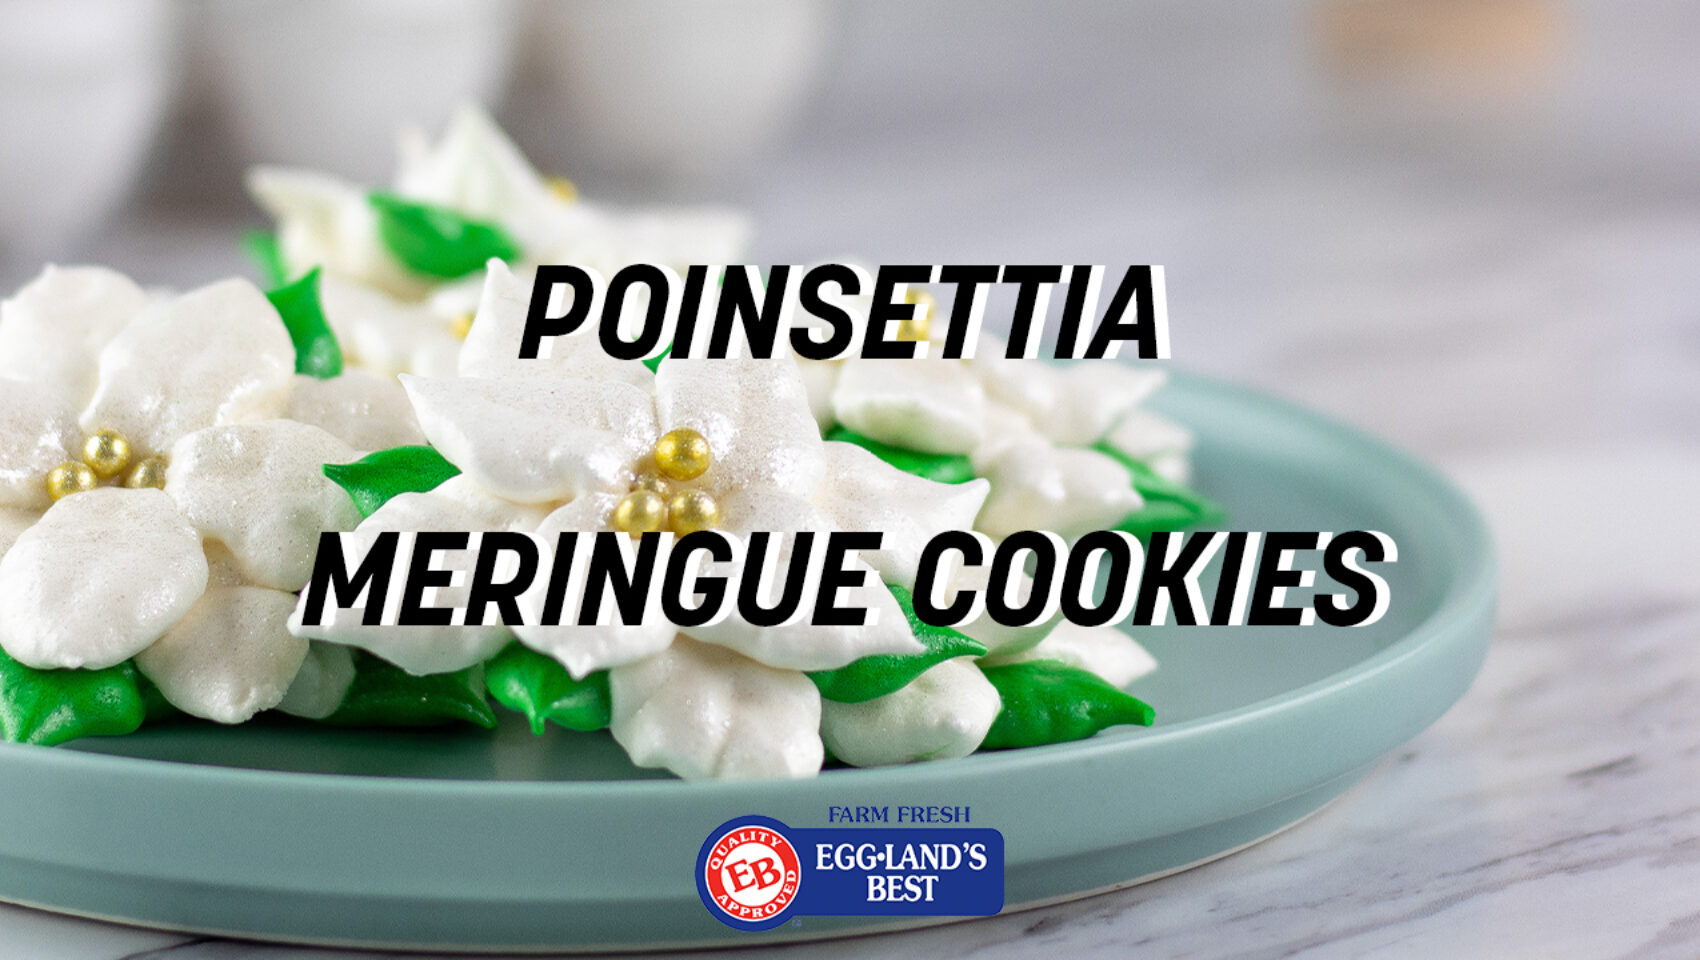 Poinsettia Meringue Cookies